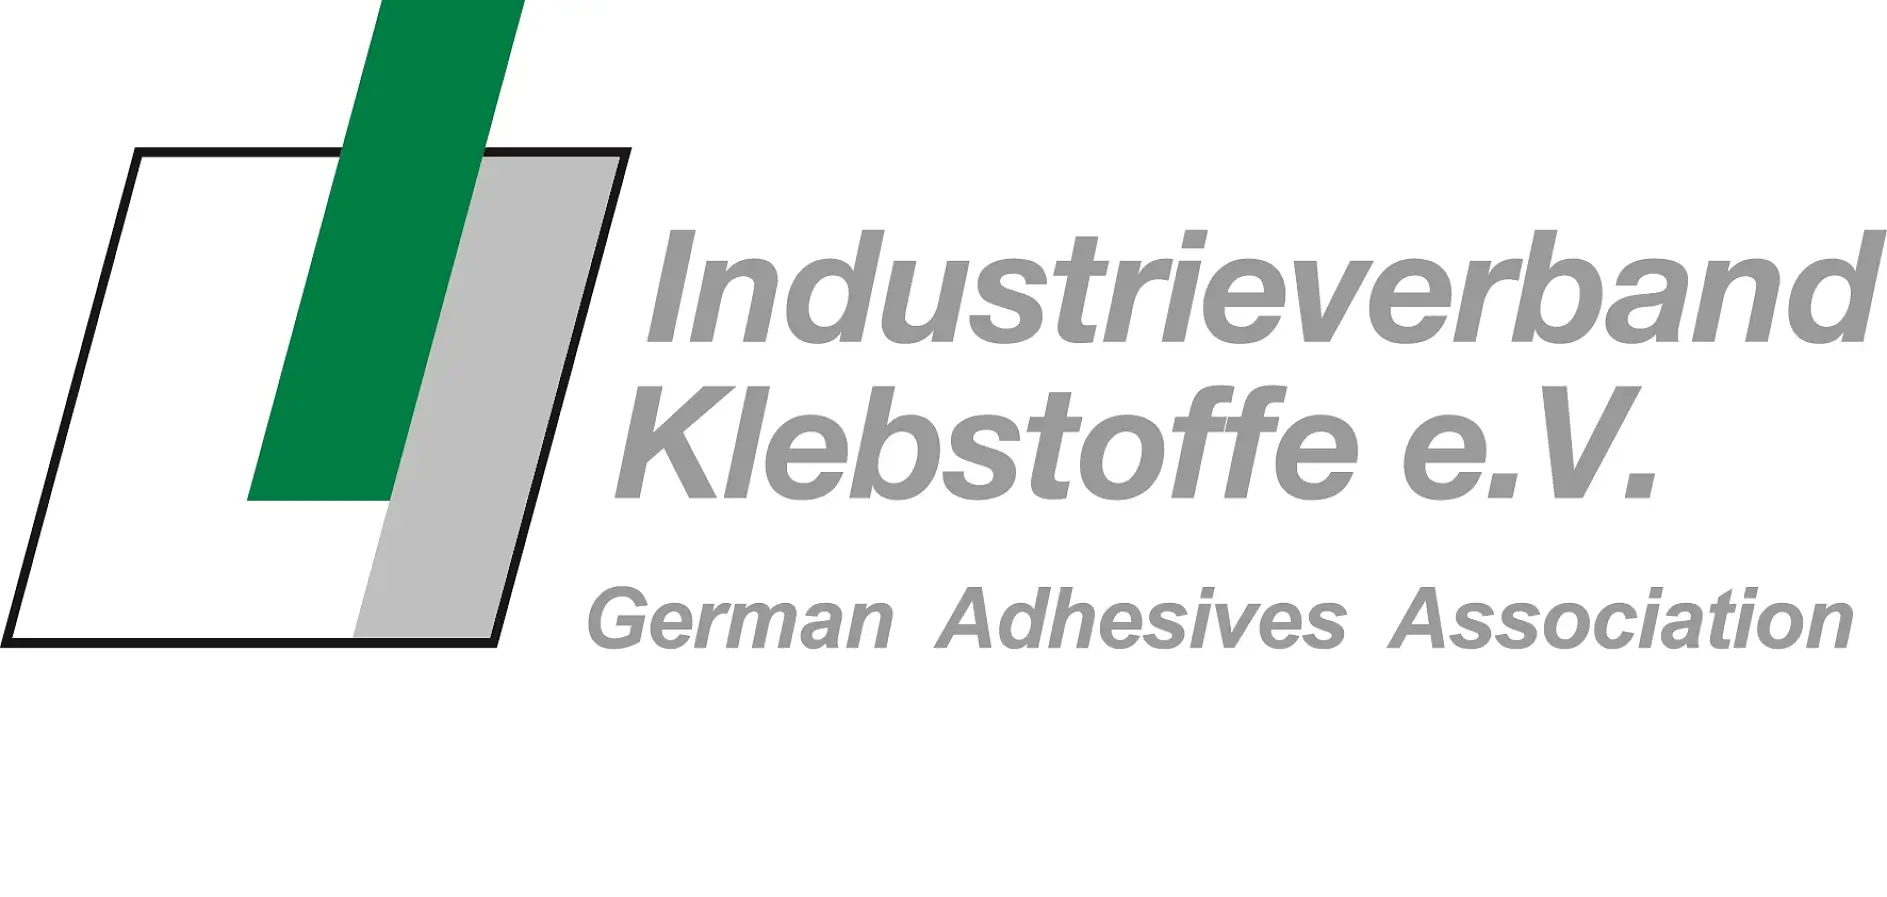 Vokietijos lipniųjų medžiagų gamintojų asociacija yra didžiausia pasaulyje – ir atsižvelgiant į jos platų paslaugų portfelį, taip pat yra ir pirmaujanti pasaulyje – nacionalinė organizacija lipniųjų medžiagų technologijų srityje.